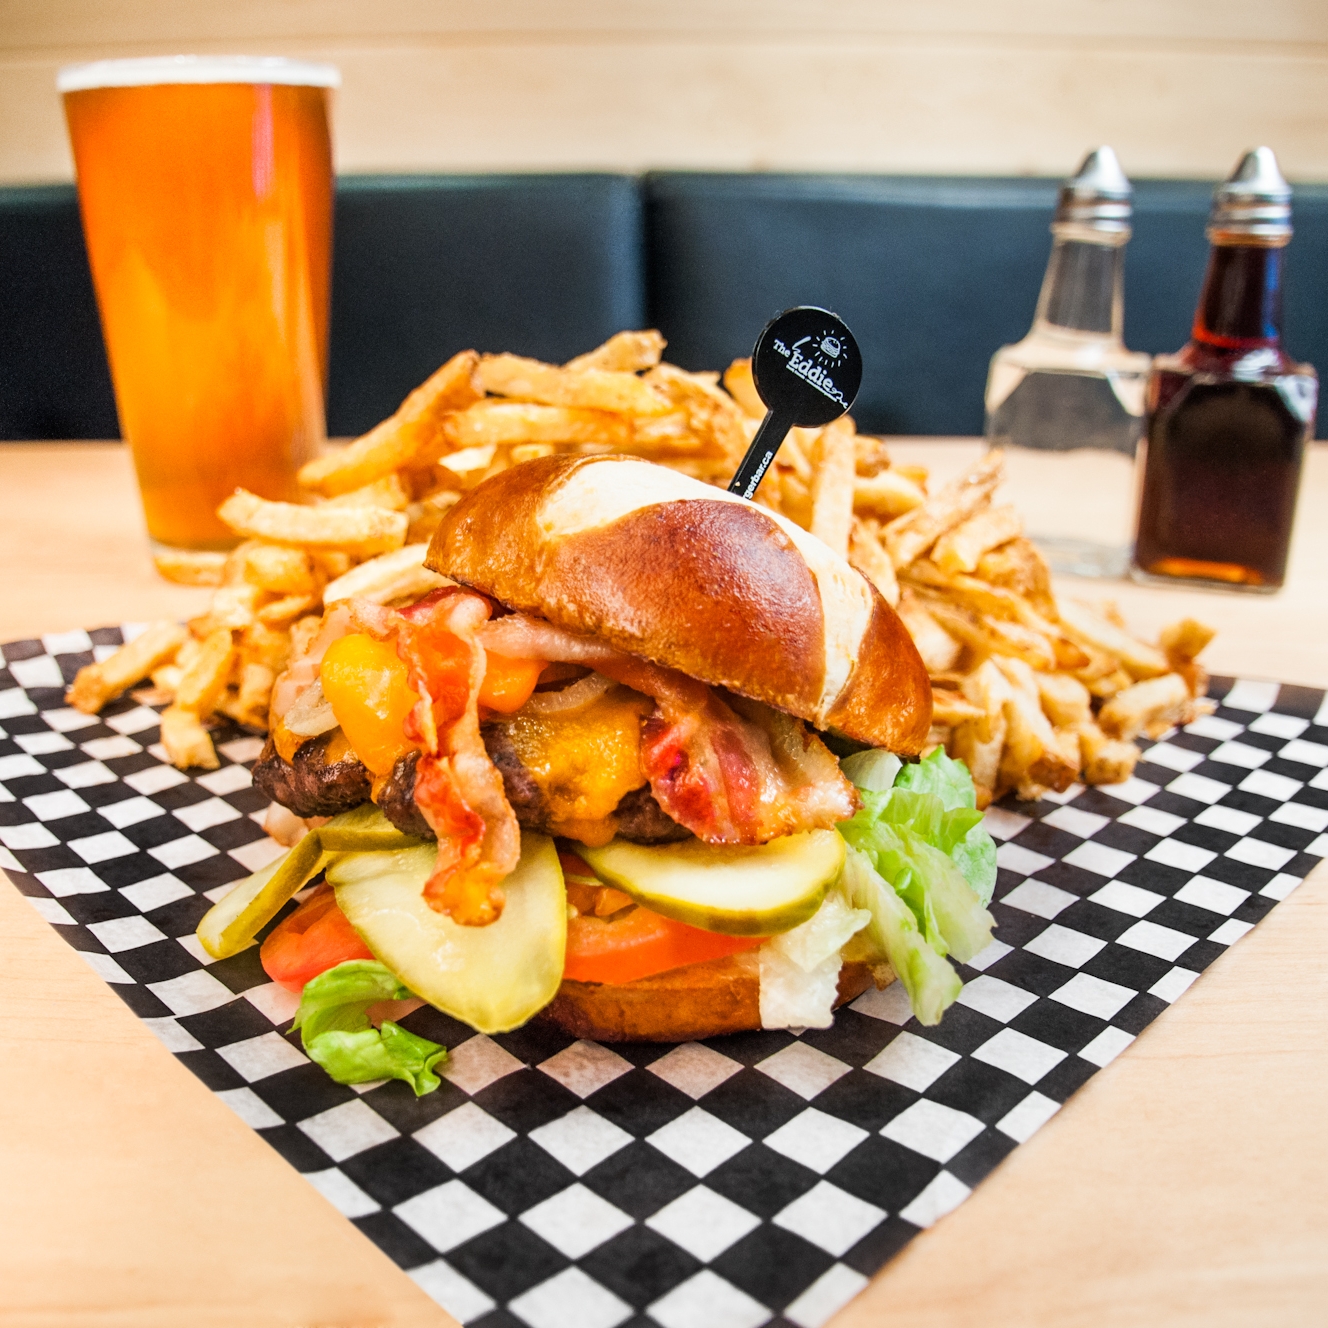 Eddie burger | Banff's best burgers